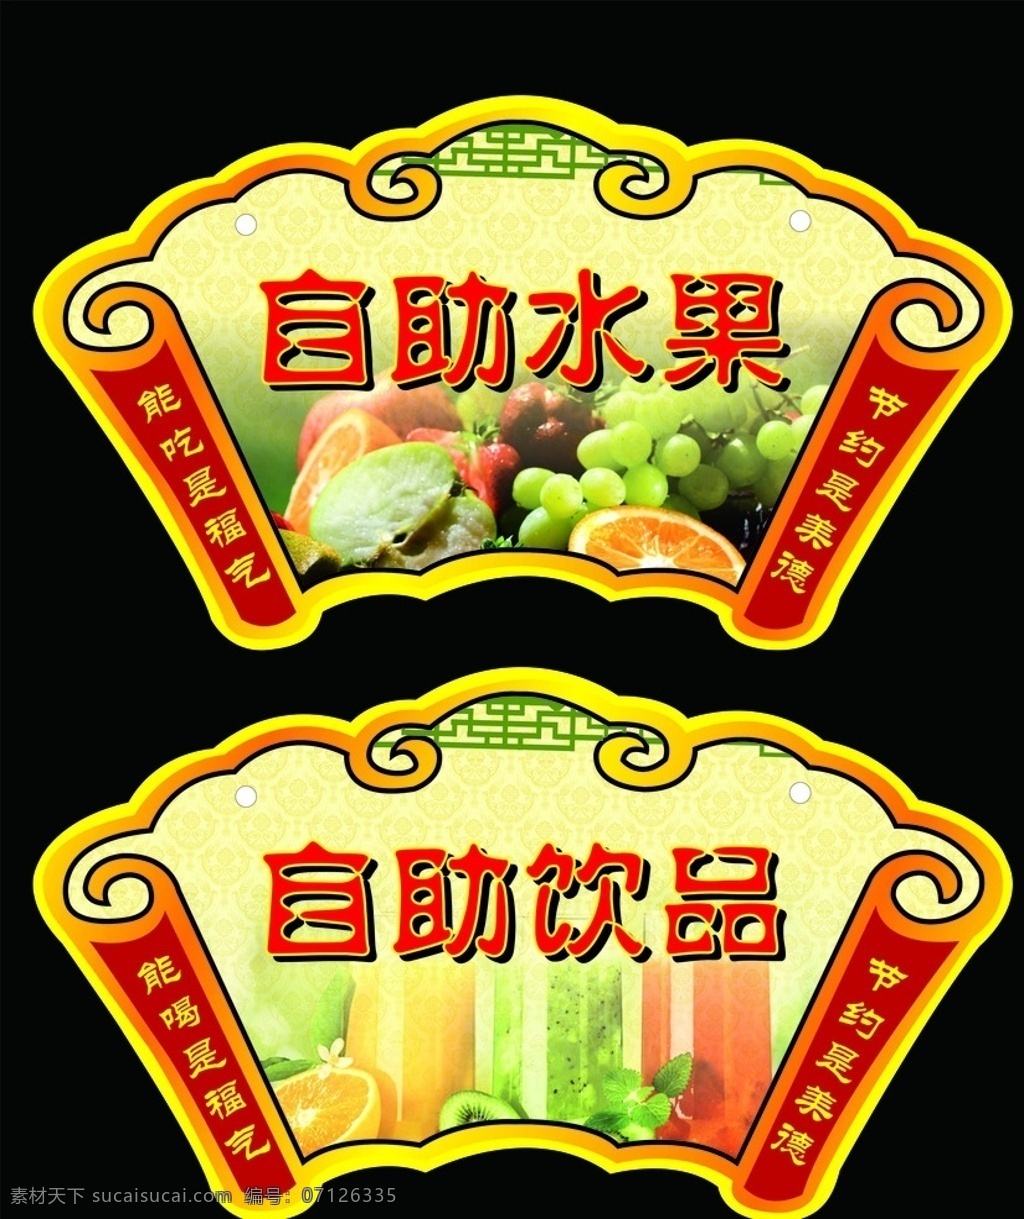 自助水果 饮品 挂牌 自助 水果 新鲜 好吃 美味 提示牌 宣传 海报 dm单 中国风 免费